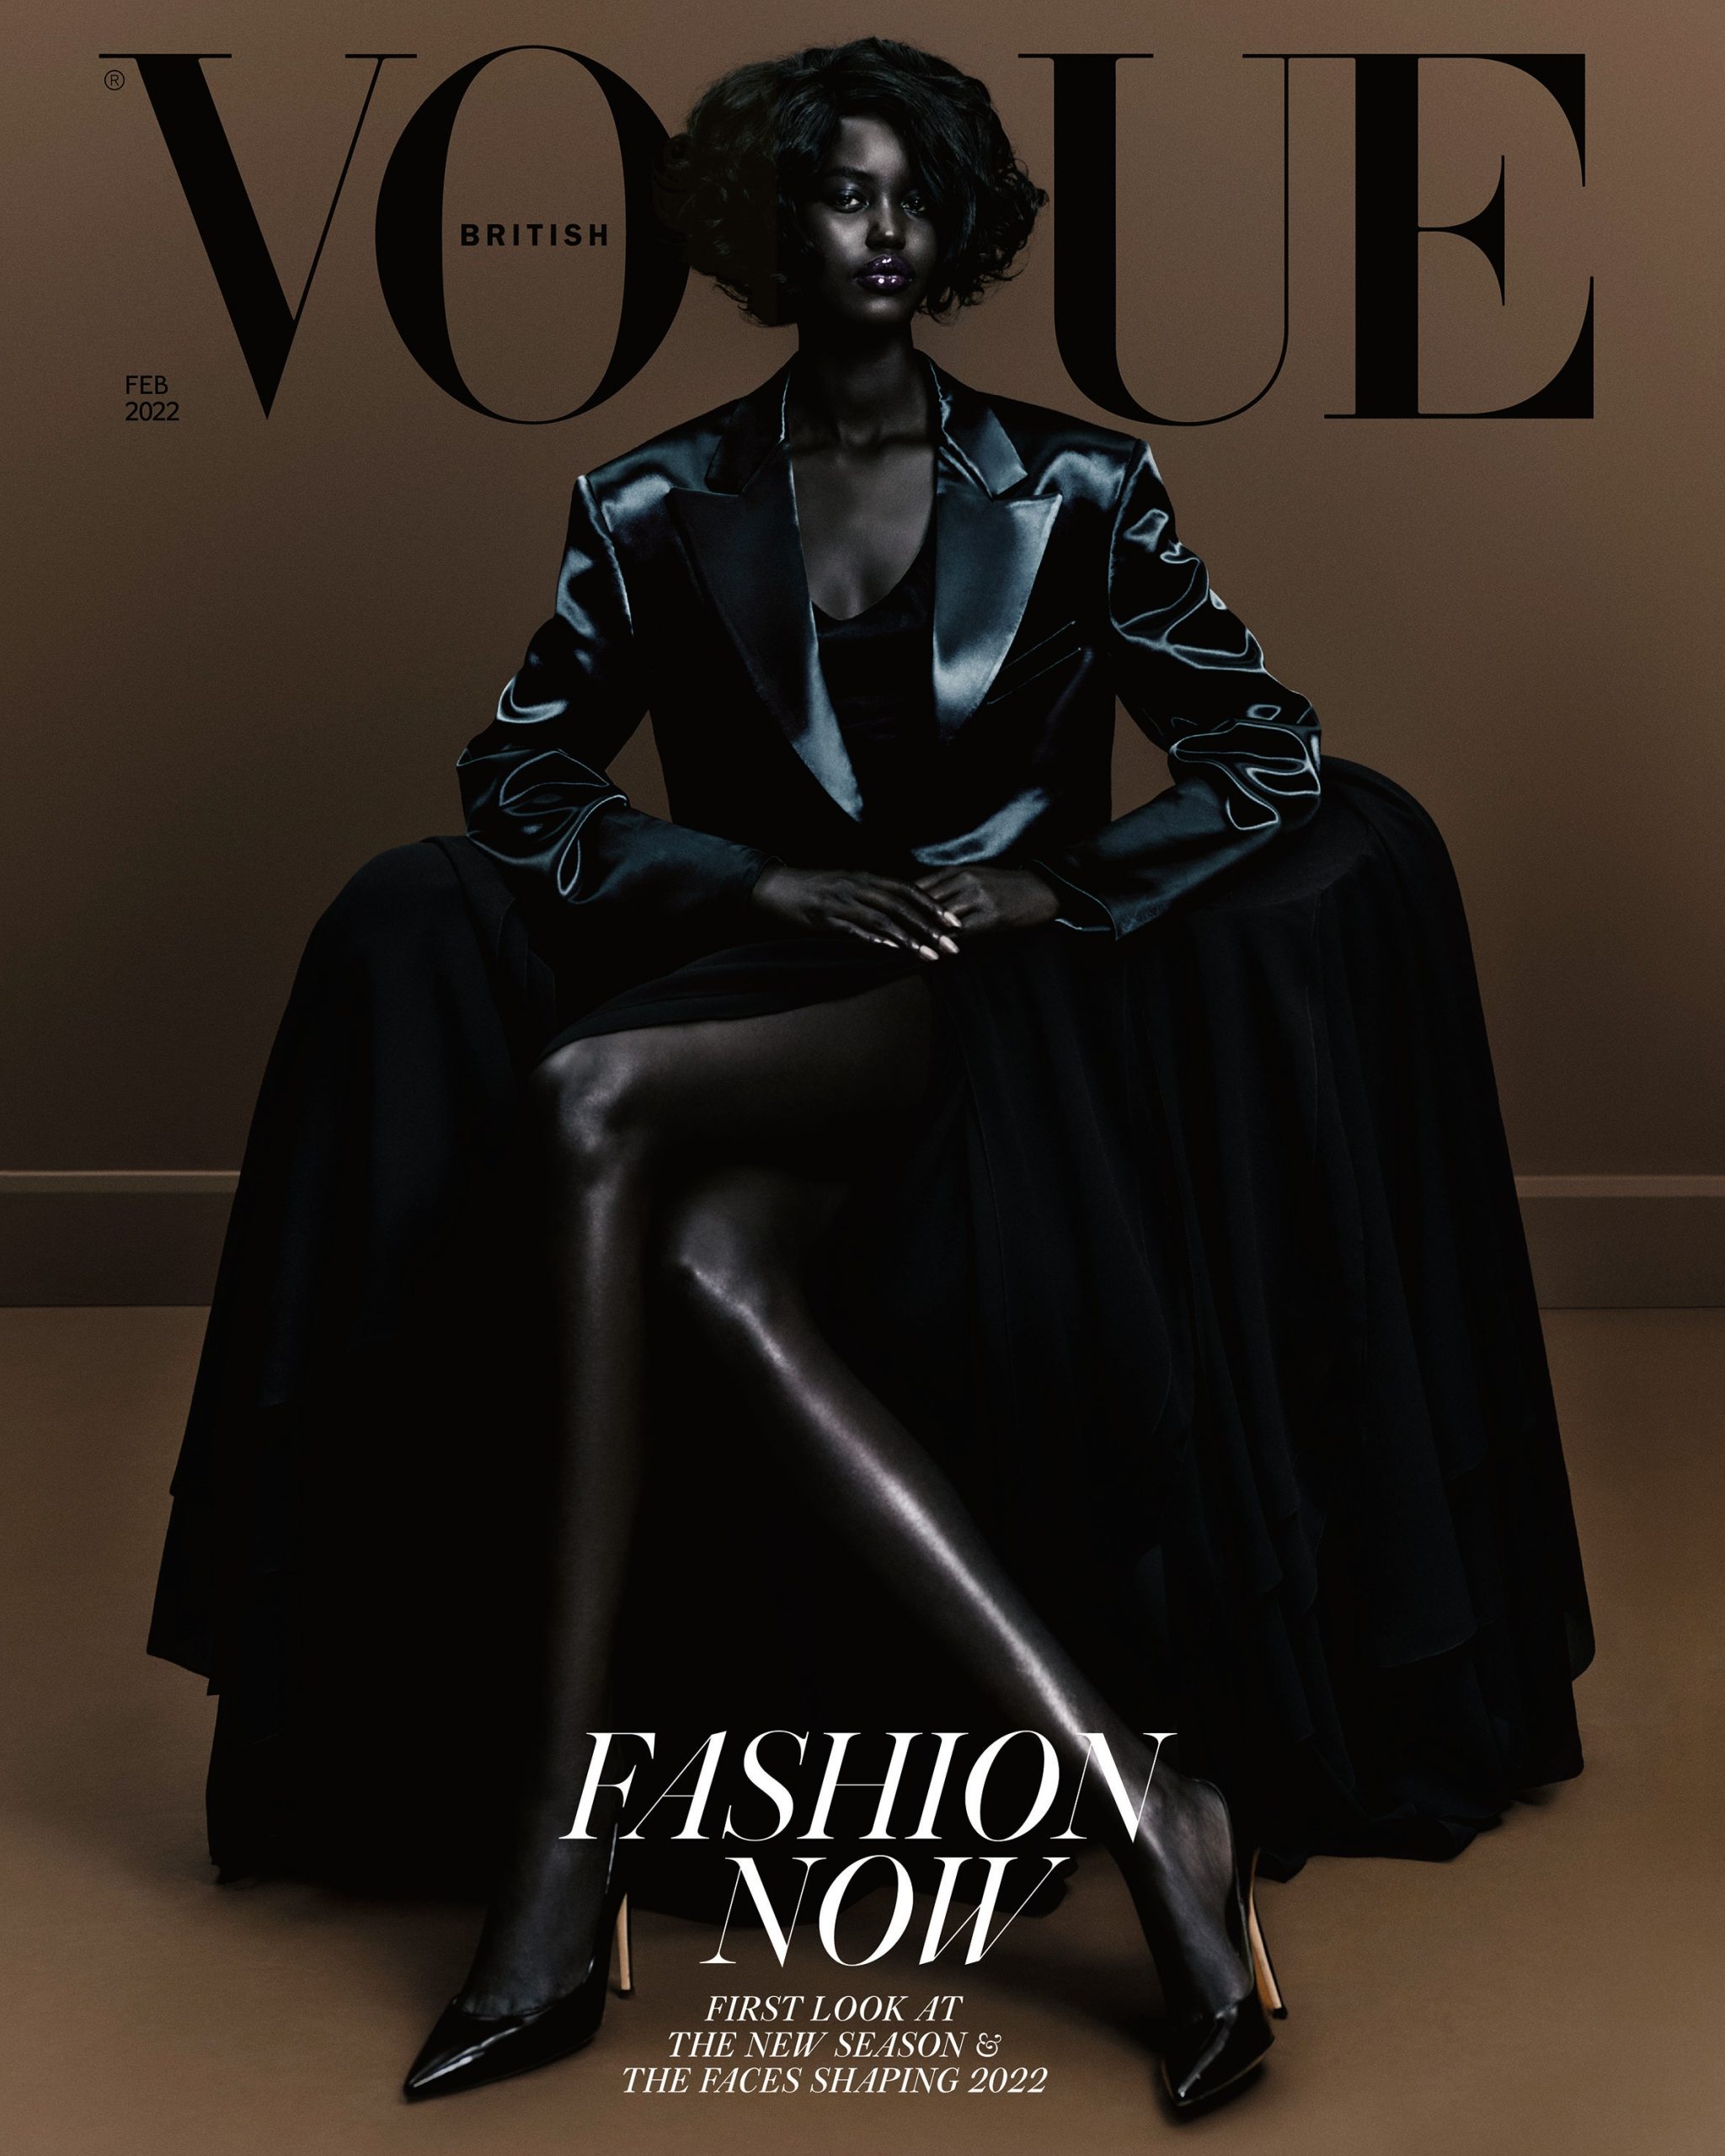 British Vogue's reverse bleaching